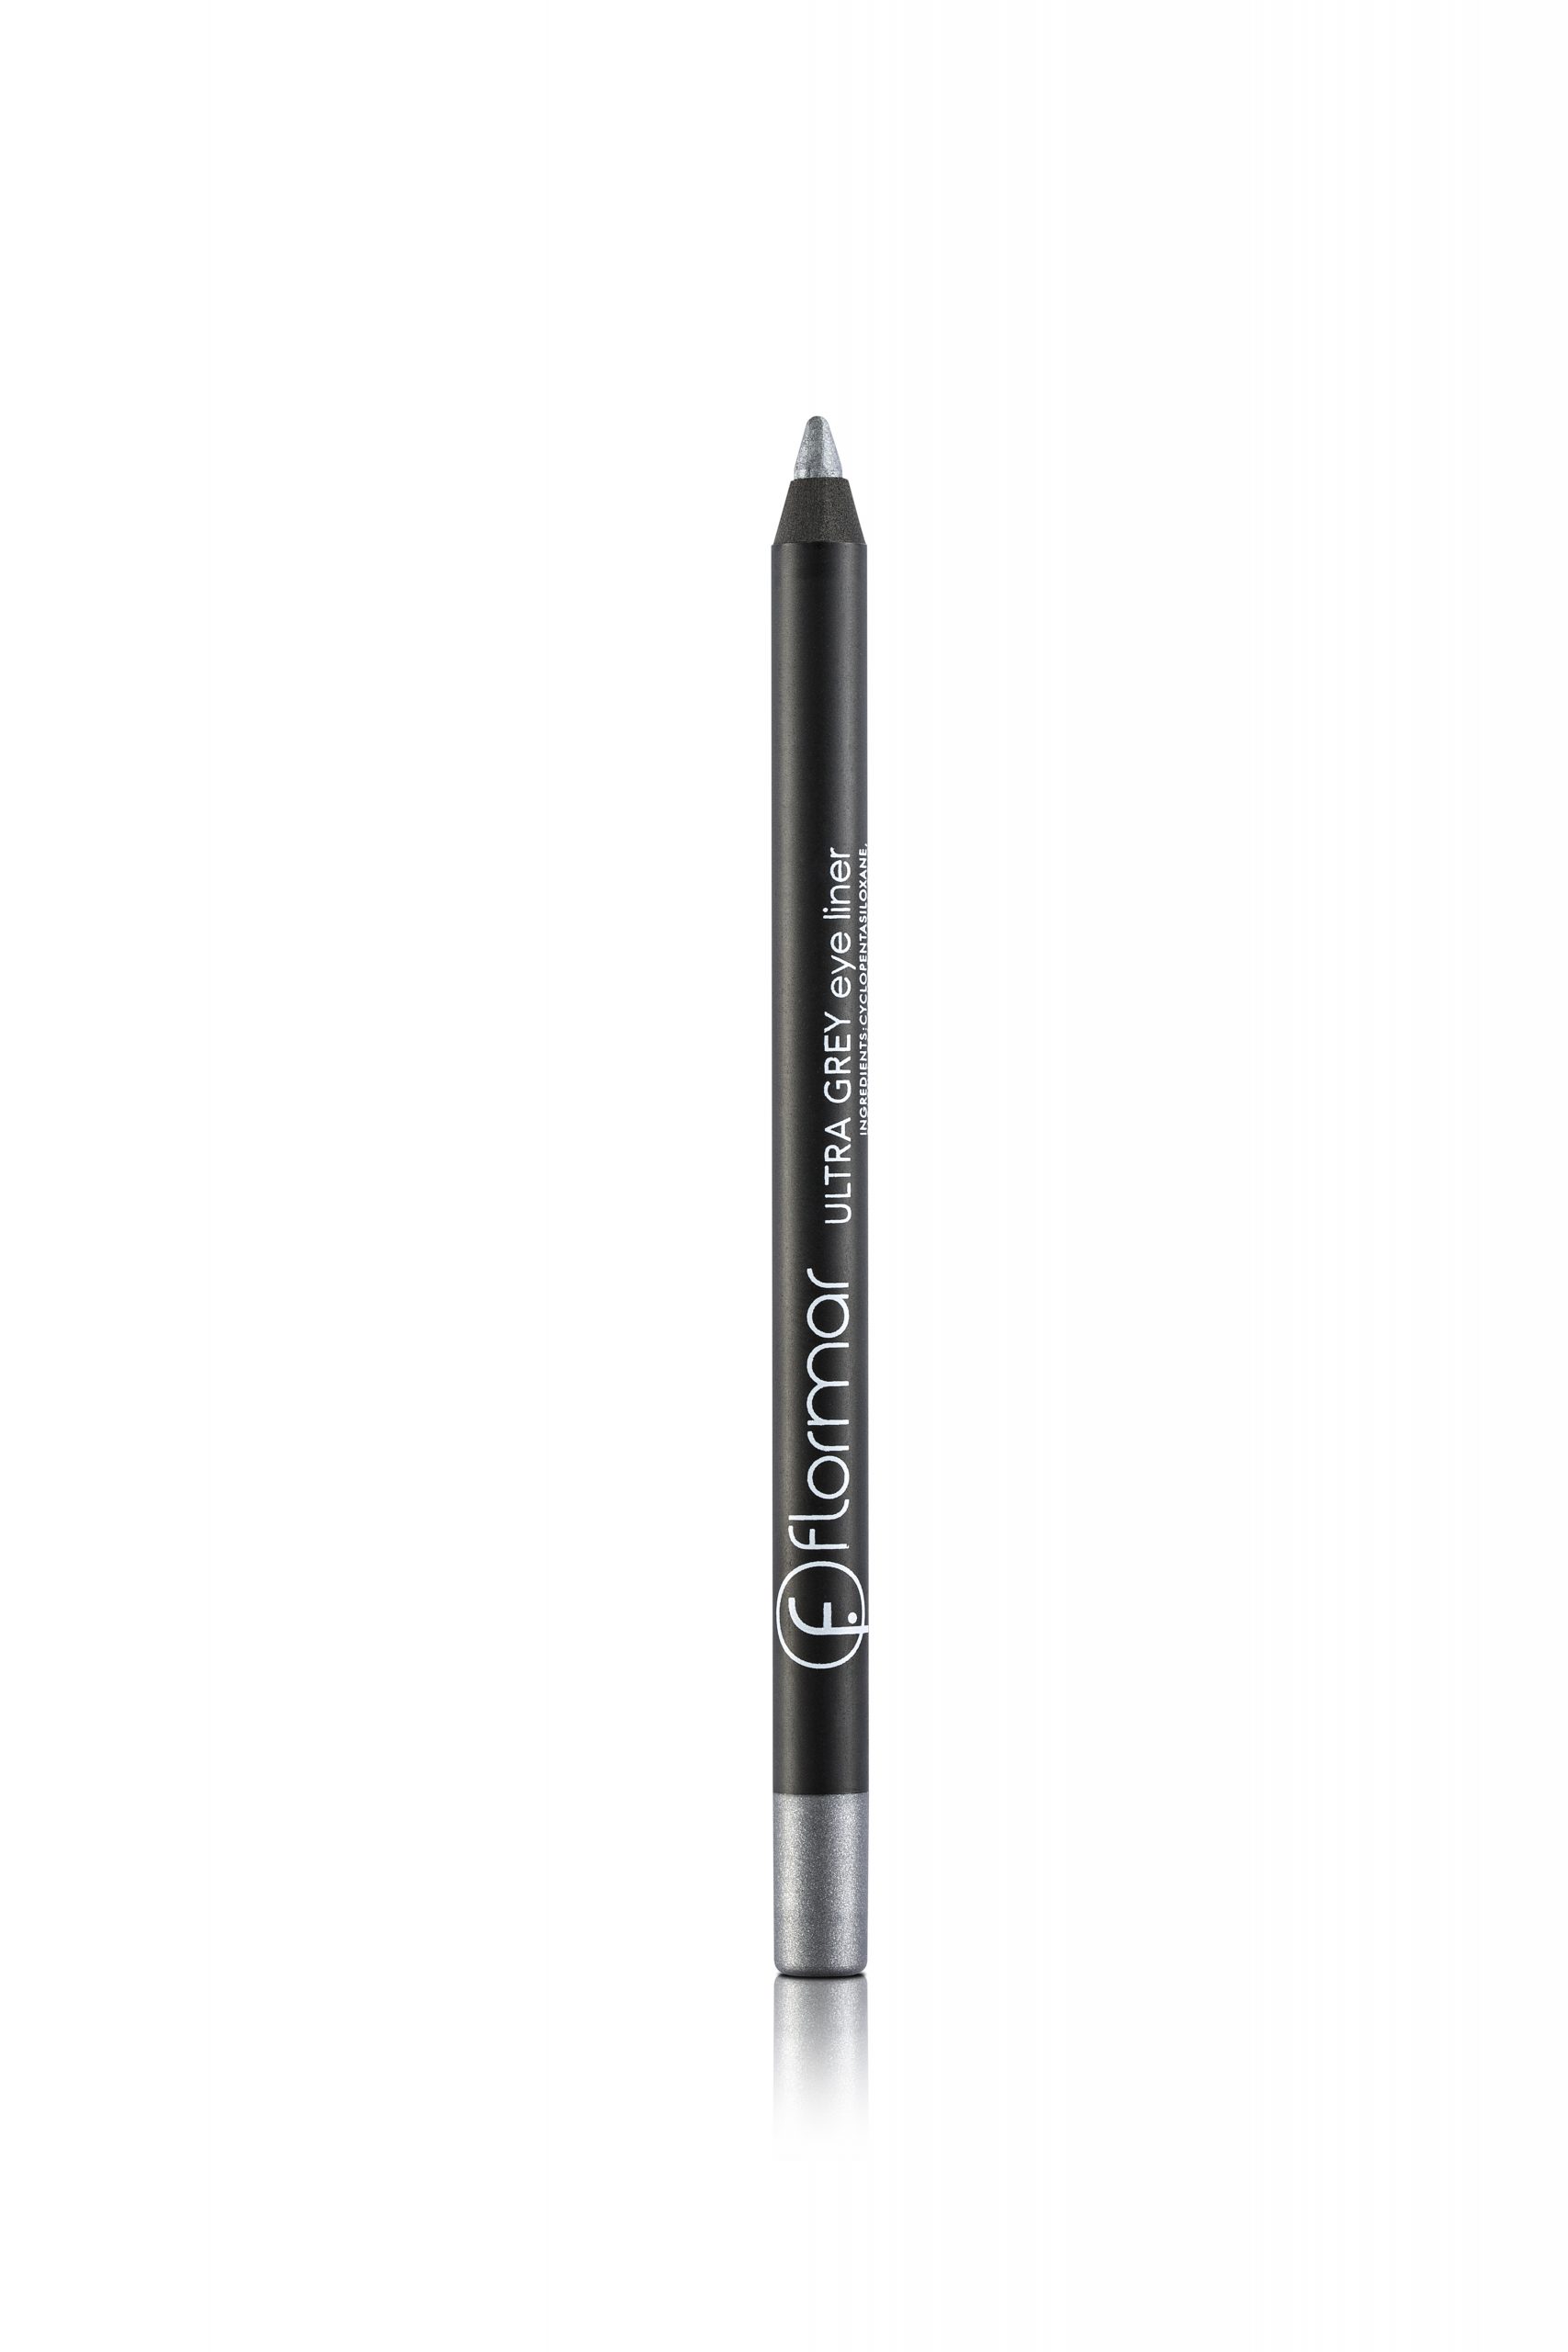 Flormar Eyeliner Pencil | Fehilys